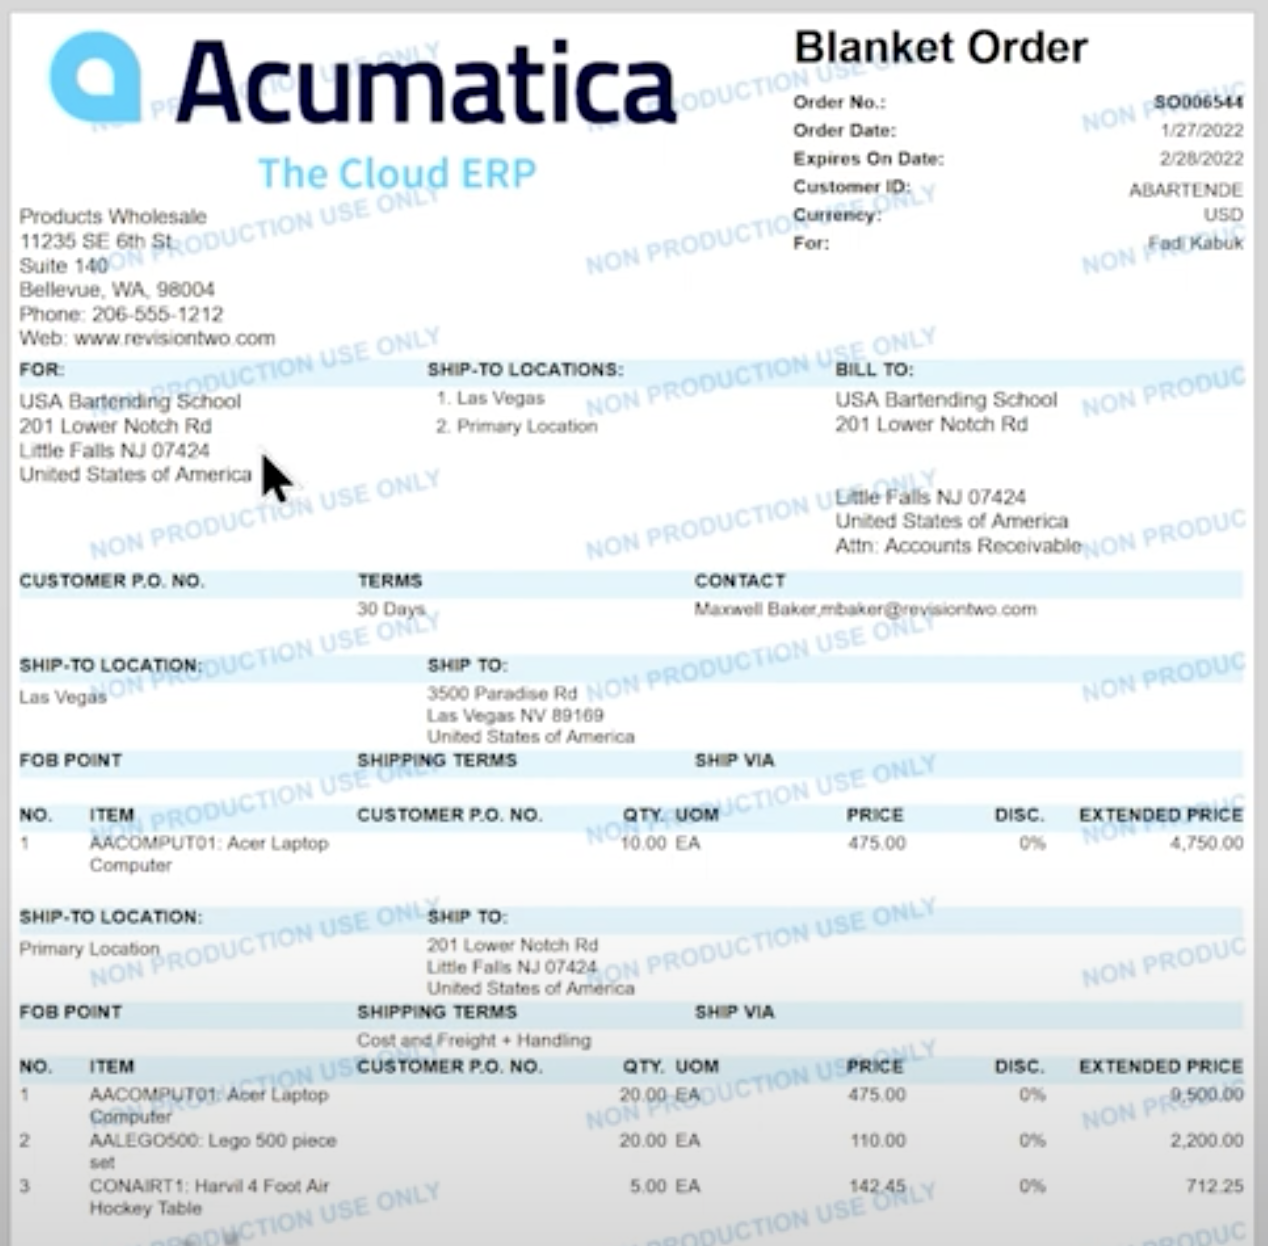 Blanket-Sales-Order-Form